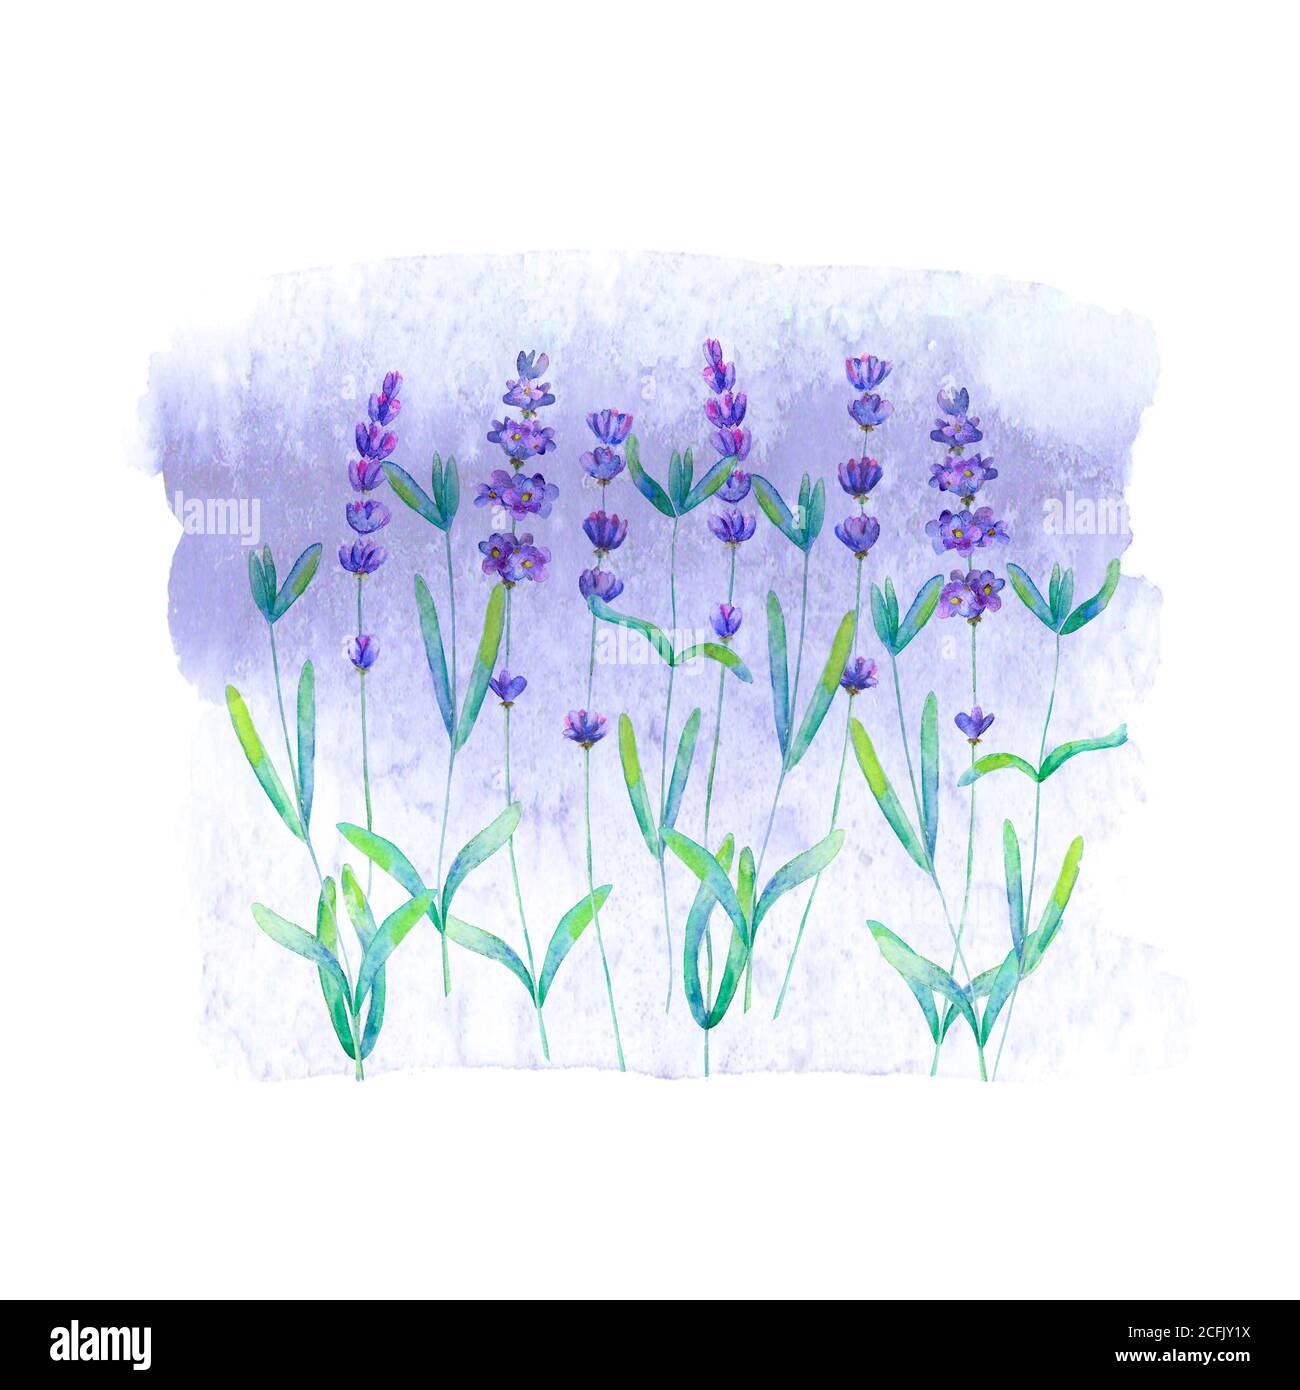 Motif de champ lavande sur coloration violette isolé sur fond blanc. Aquarelle fleurs dessinées à la main. Illustration botanique aquarelle avec lettrage. Banque D'Images